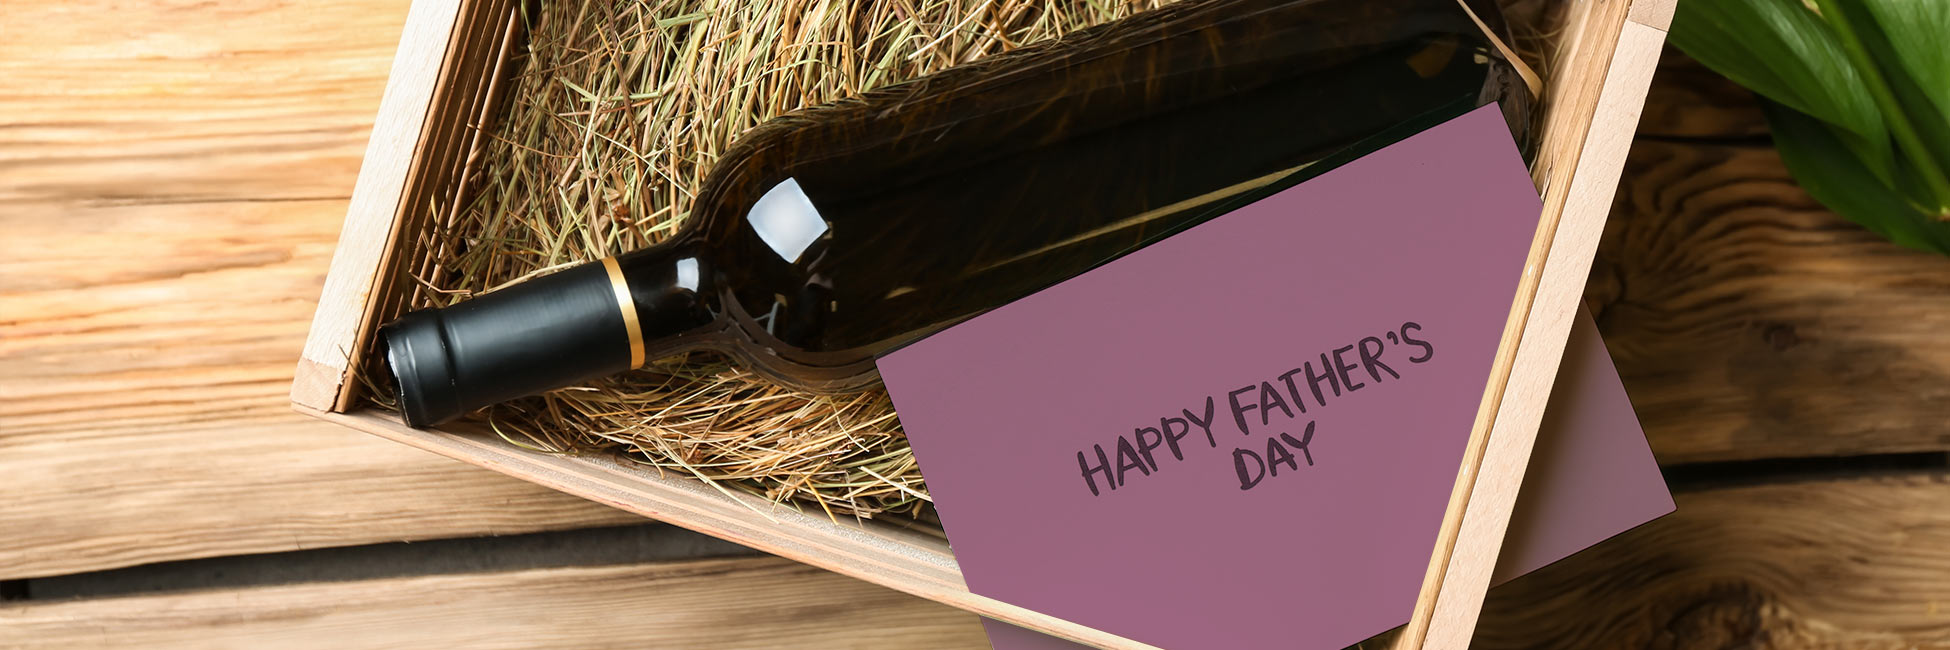 Wein - Das perfekte Geschenk zum Vatertag